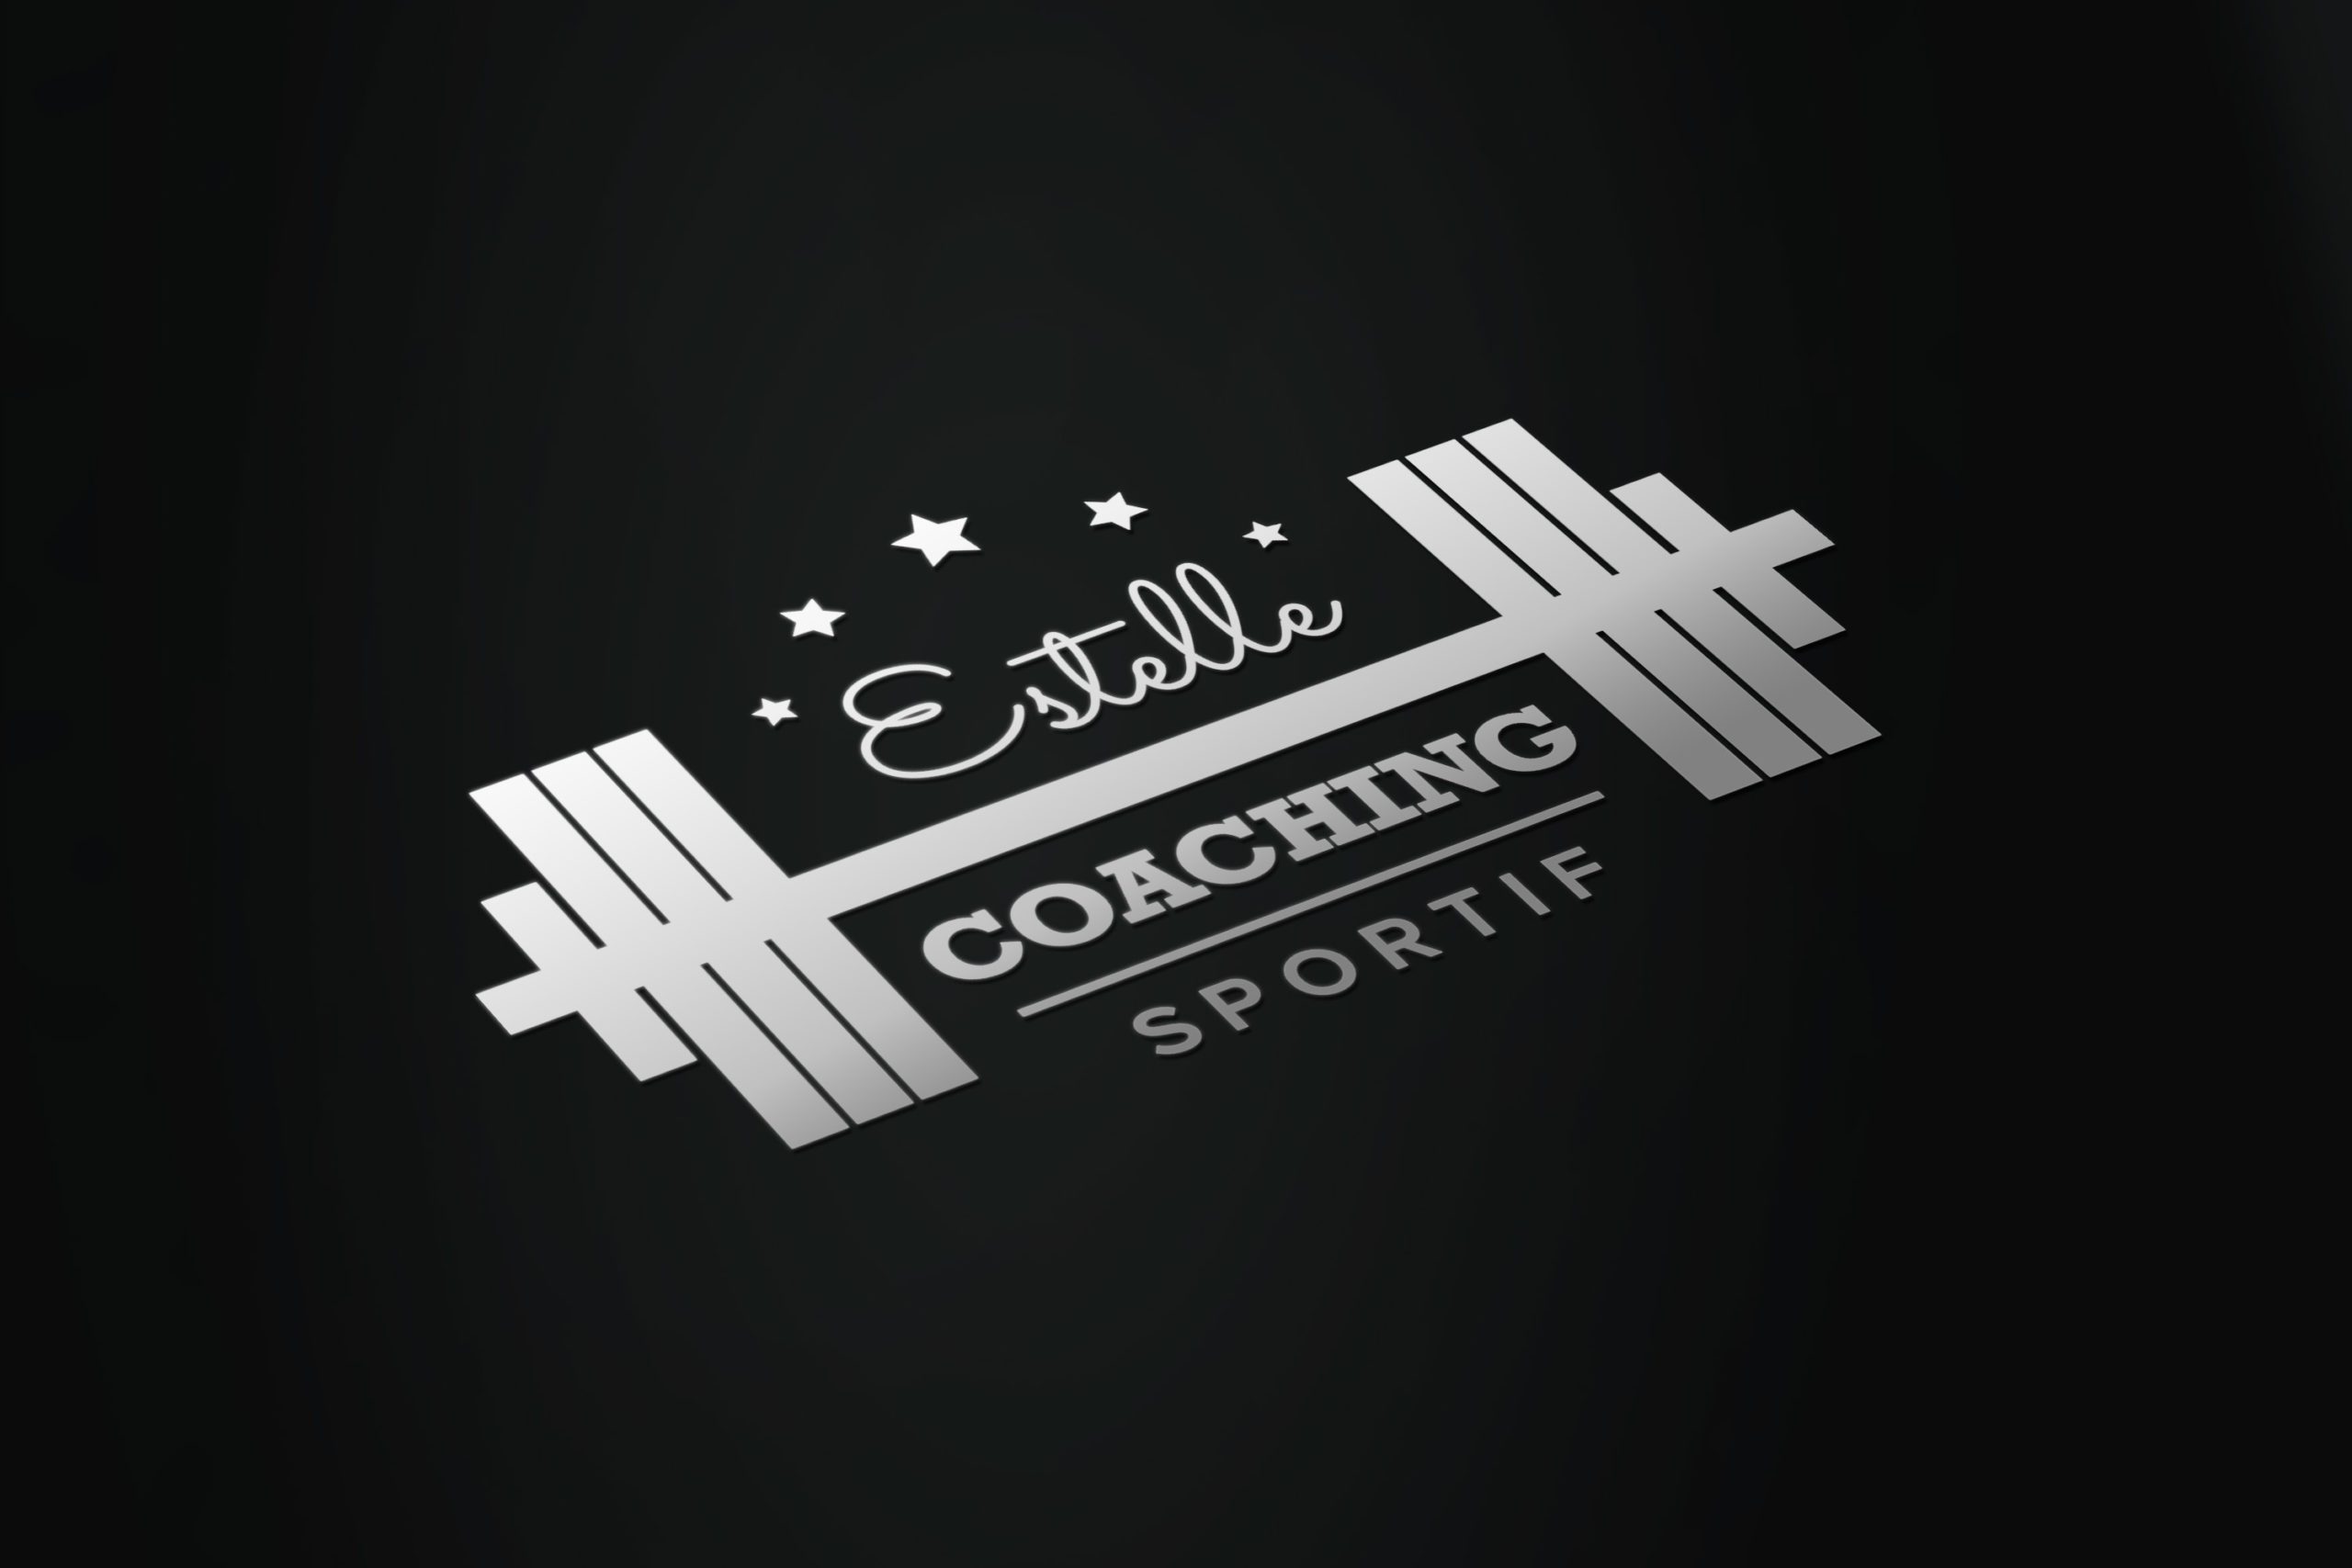 Logo Estelle Coaching Sportif blanc sur fond noir